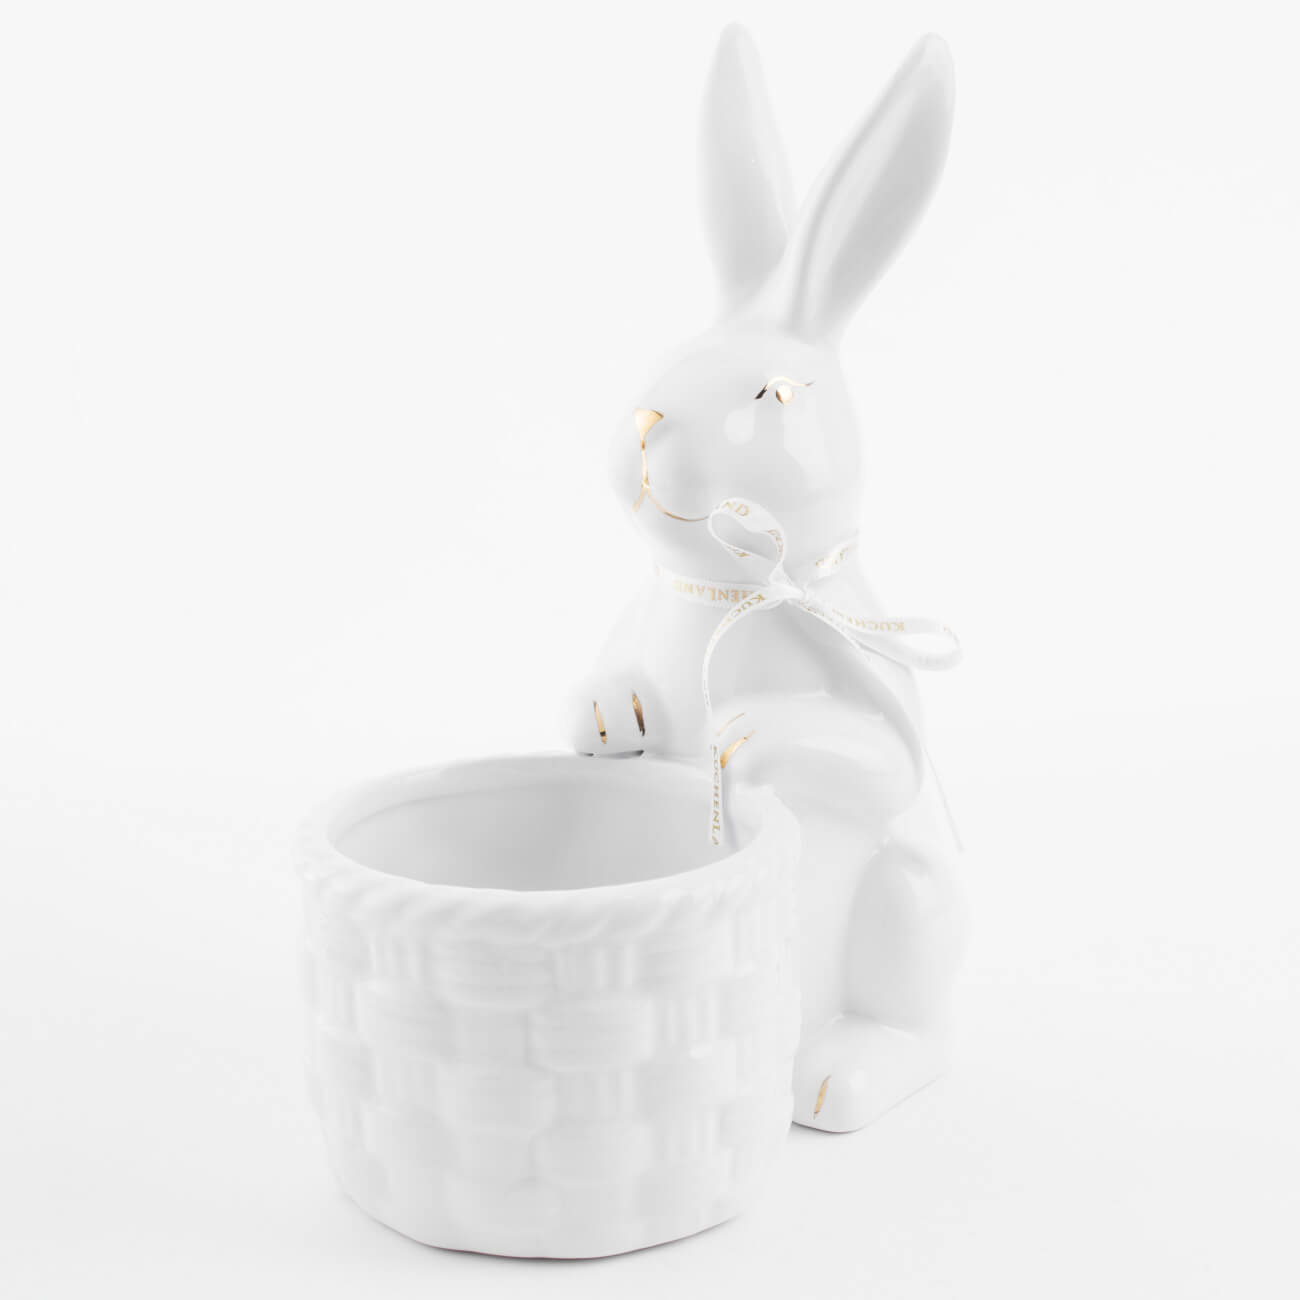 Конфетница, 18x23 см, керамика, бело-золотистая, Кролик с плетенной корзиной, Easter gold архитектурная керамика мира т5